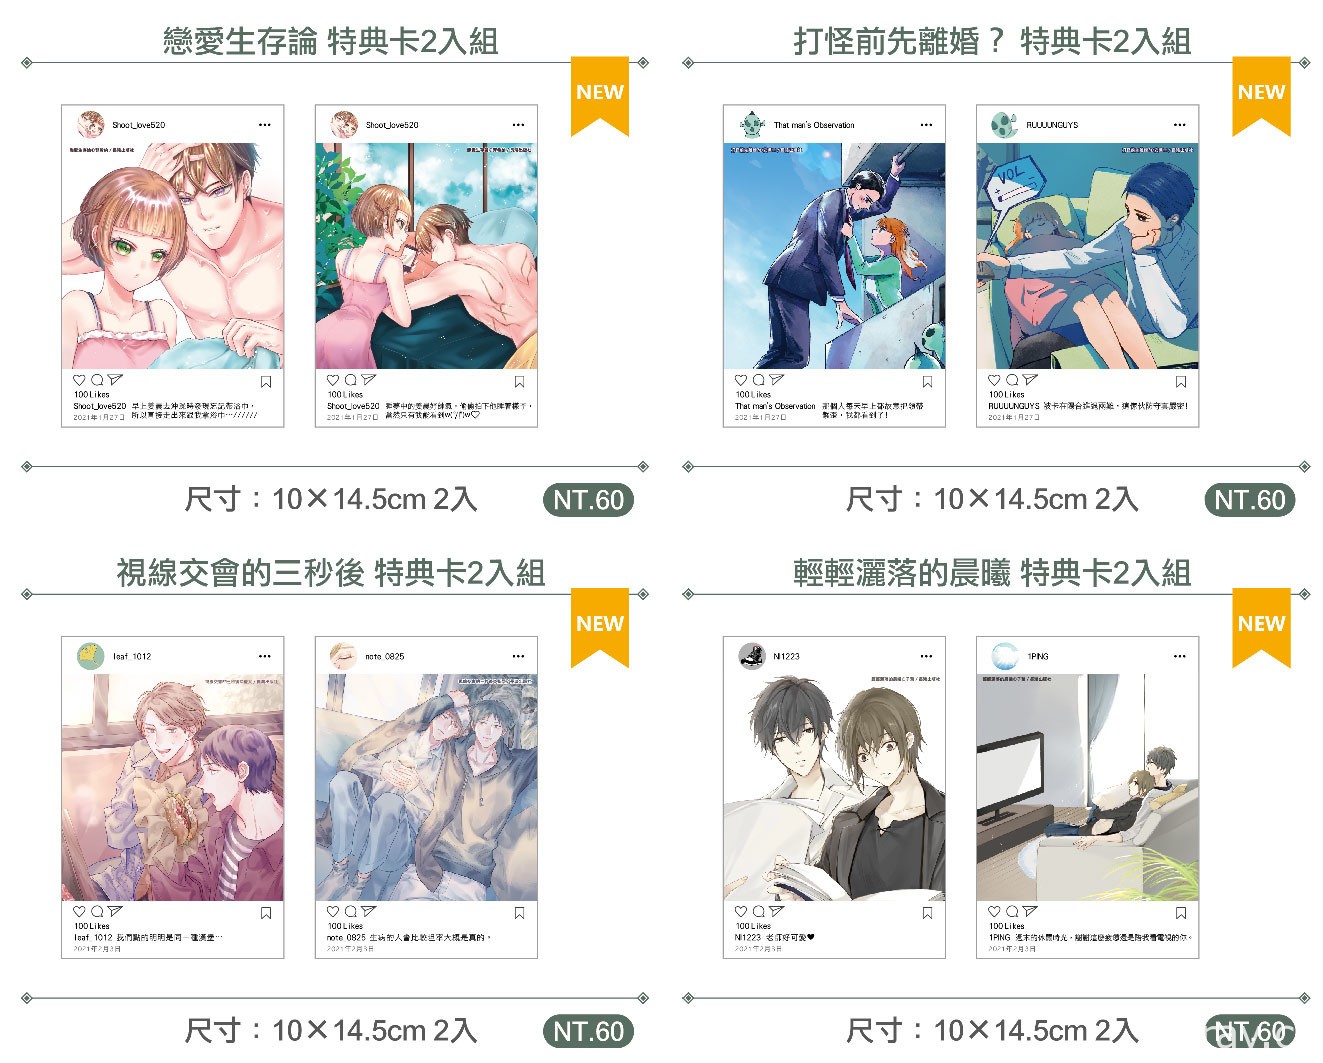 【TiCA21】長鴻出版社公開台北國際動漫節限定商品情報